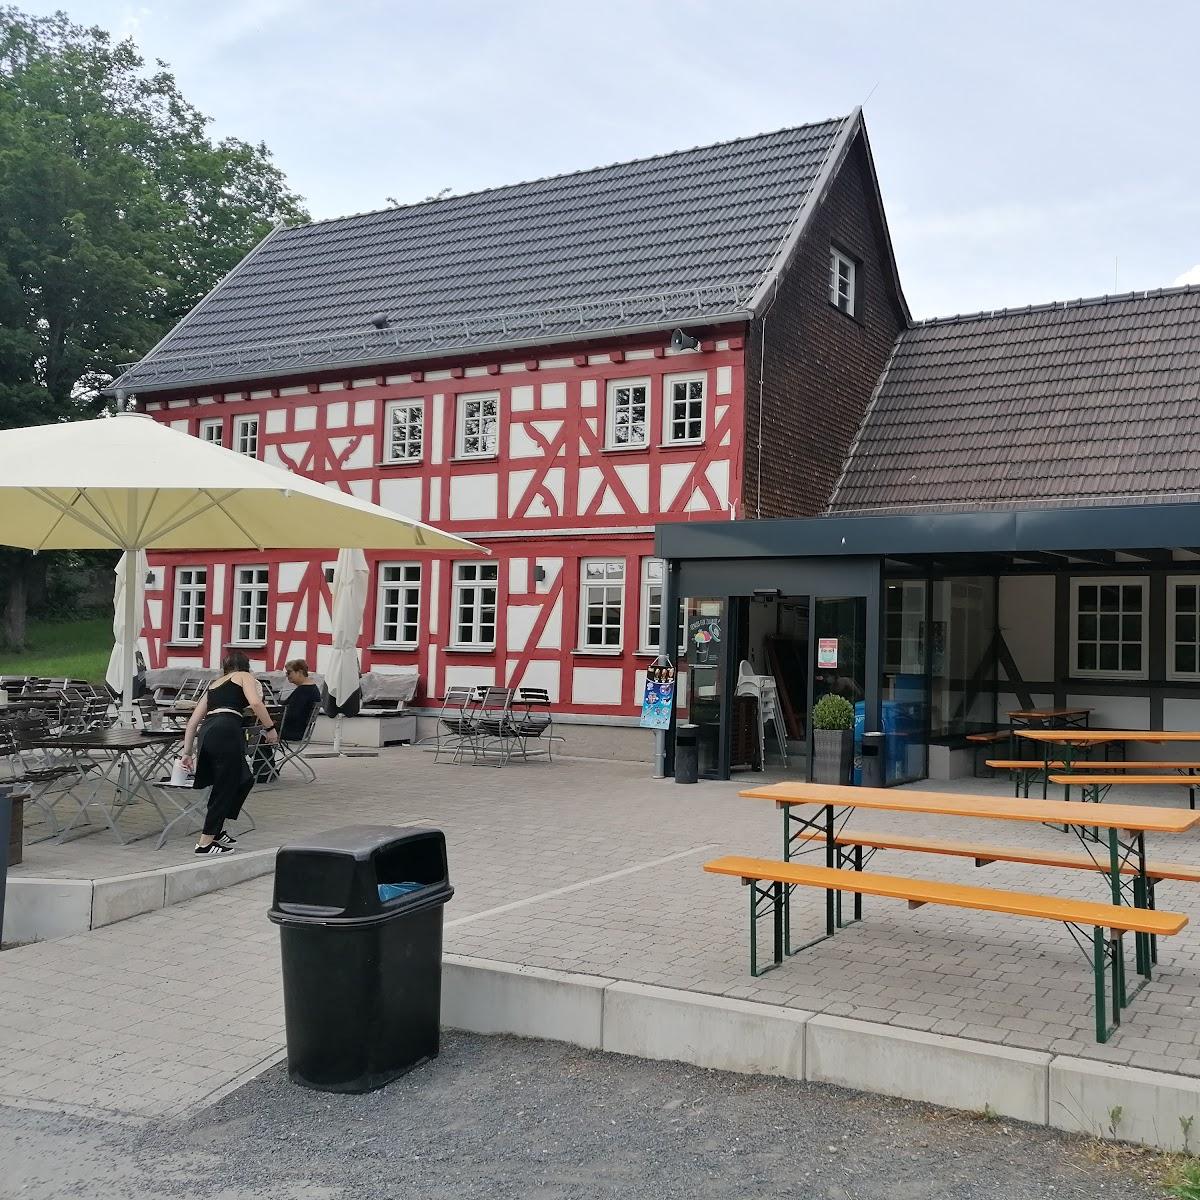 Restaurant "Hessenhaus" in Weilburg